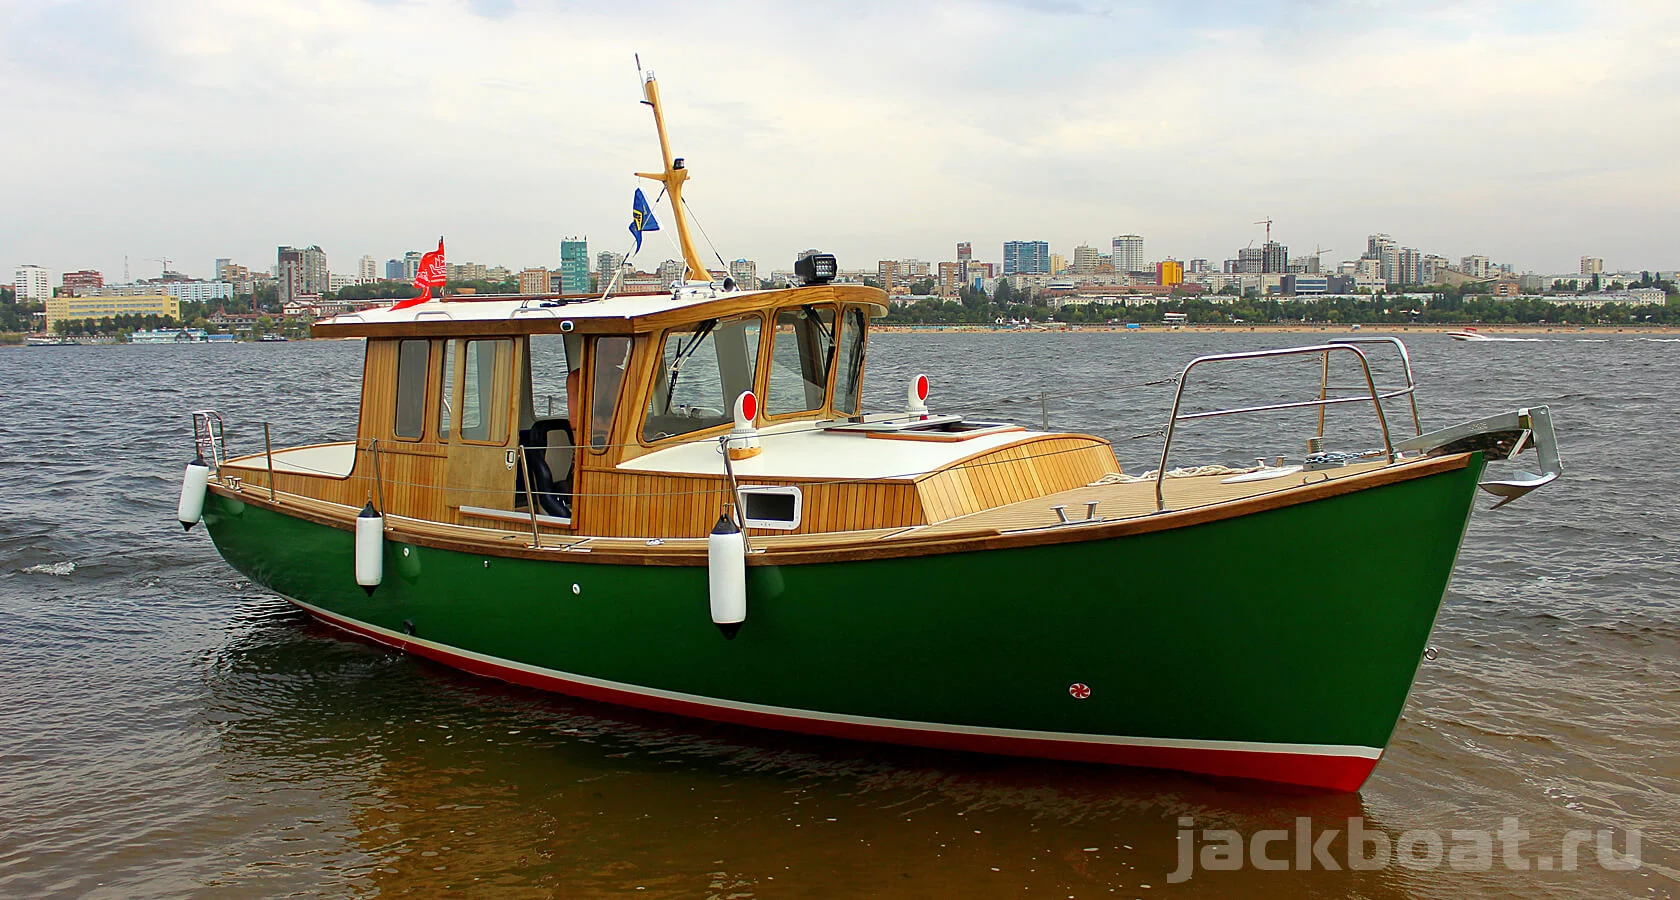 Трейлеры и прицепы для лодок, катеров и яхт | Фото и цены